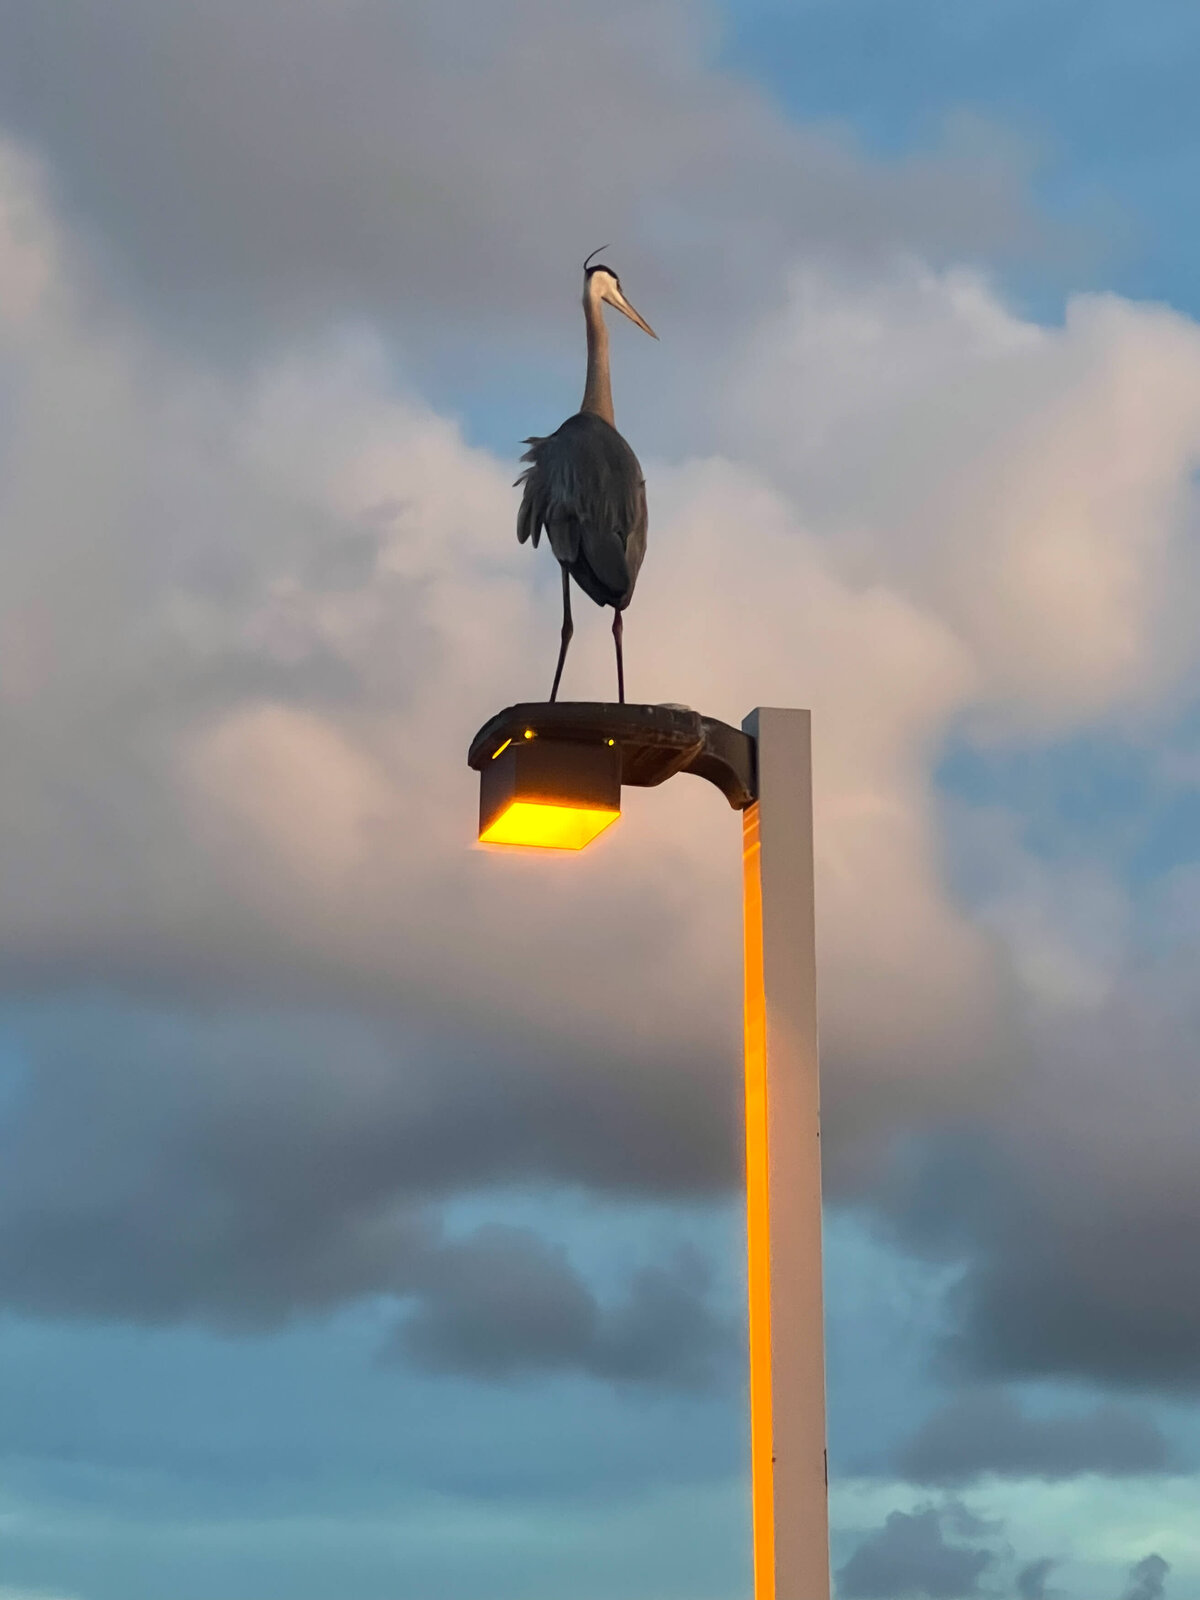 Pelican bird standing on a  street light at sunset